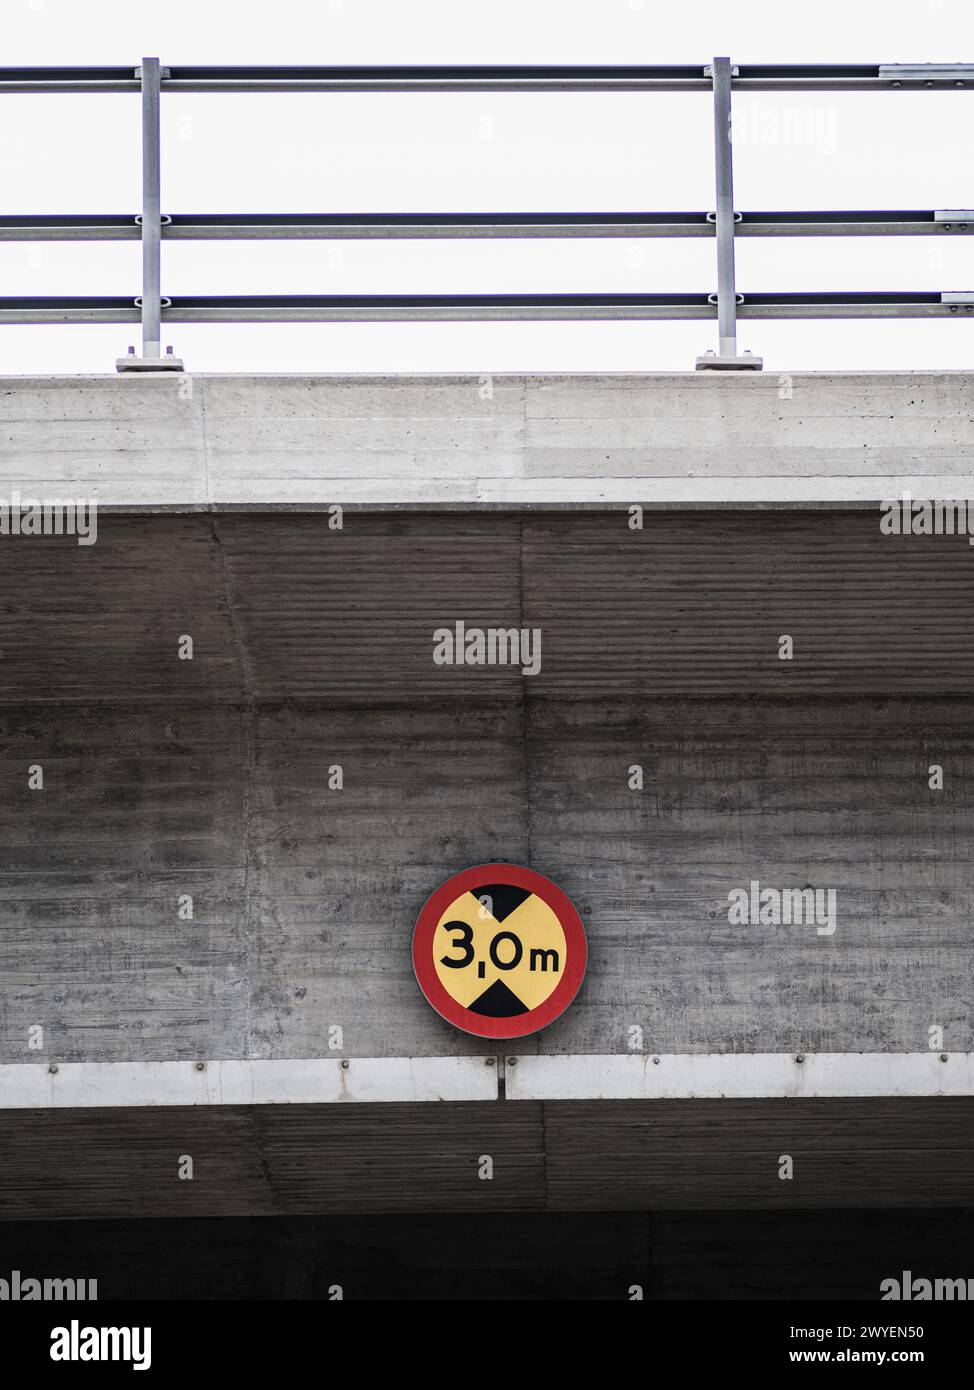 Un panneau rouge et jaune est bien en vue au-dessus d'un tunnel, fournissant des informations ou des avertissements importants aux véhicules et aux piétons qui passent. Le si Banque D'Images